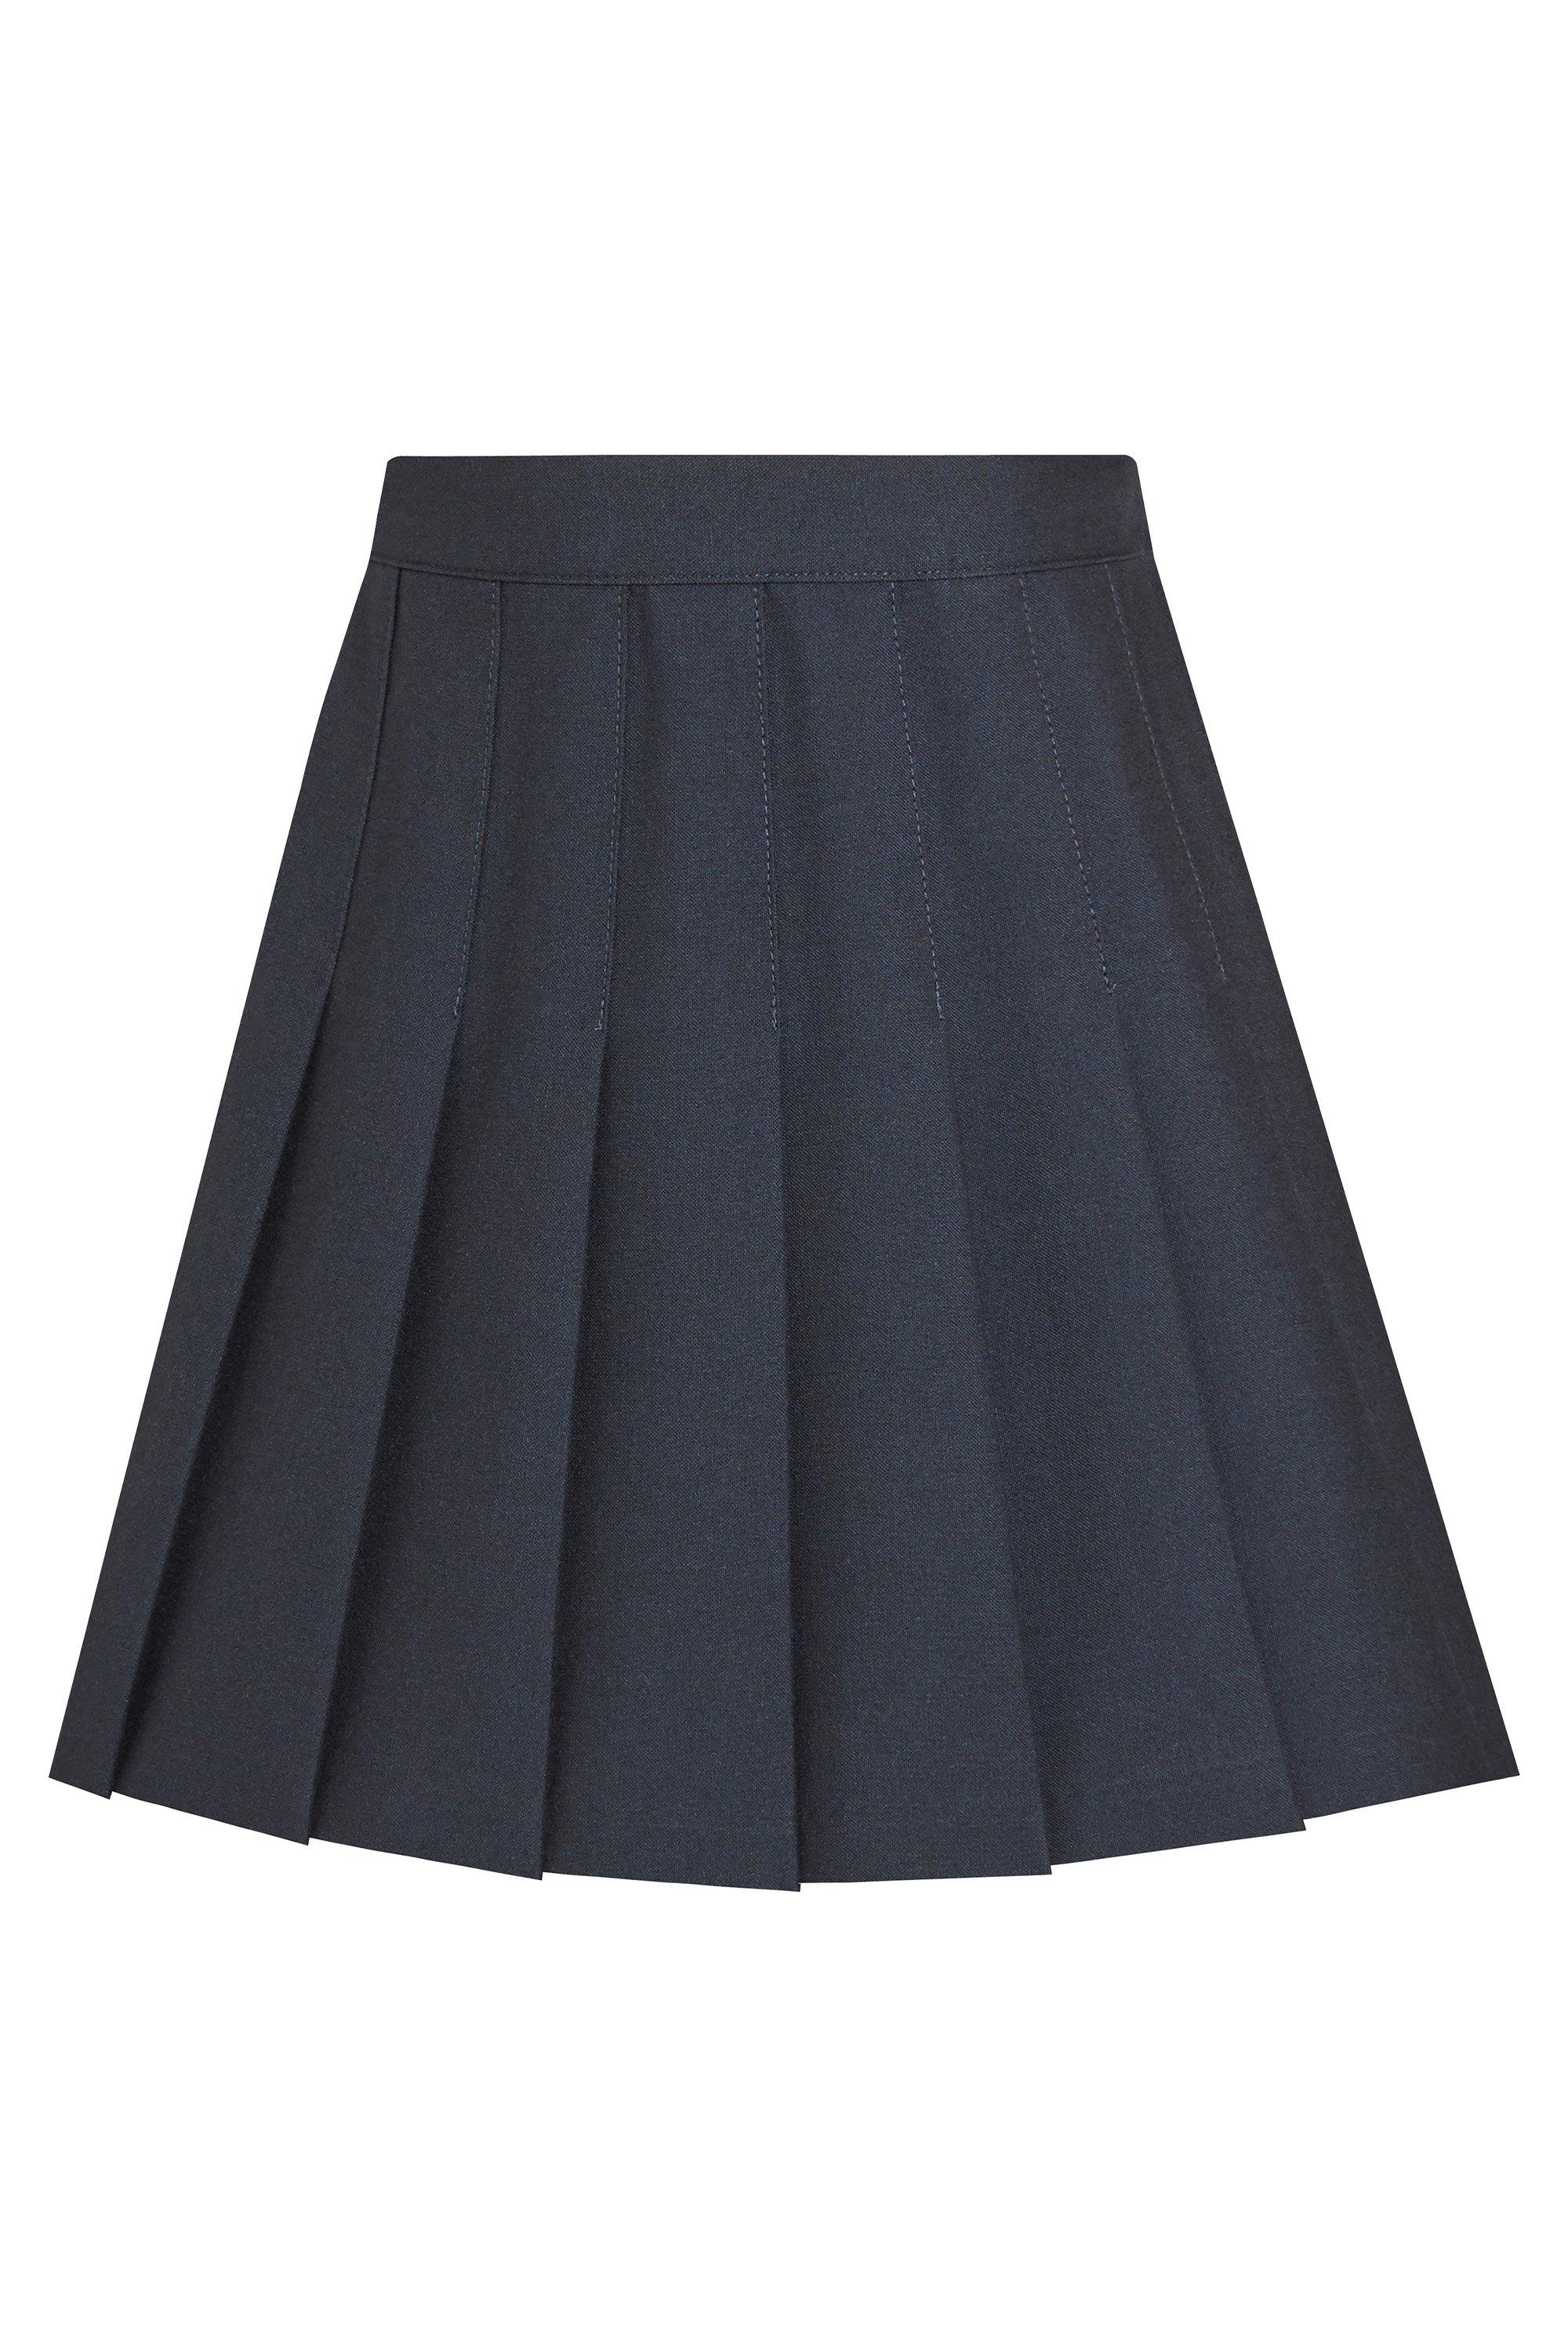 Плиссированная школьная юбка David Luke, темно-синий школьная юбка полусолнце стильные непоседы плиссированная с поясом на резинке мини размер 140 68 60 серый